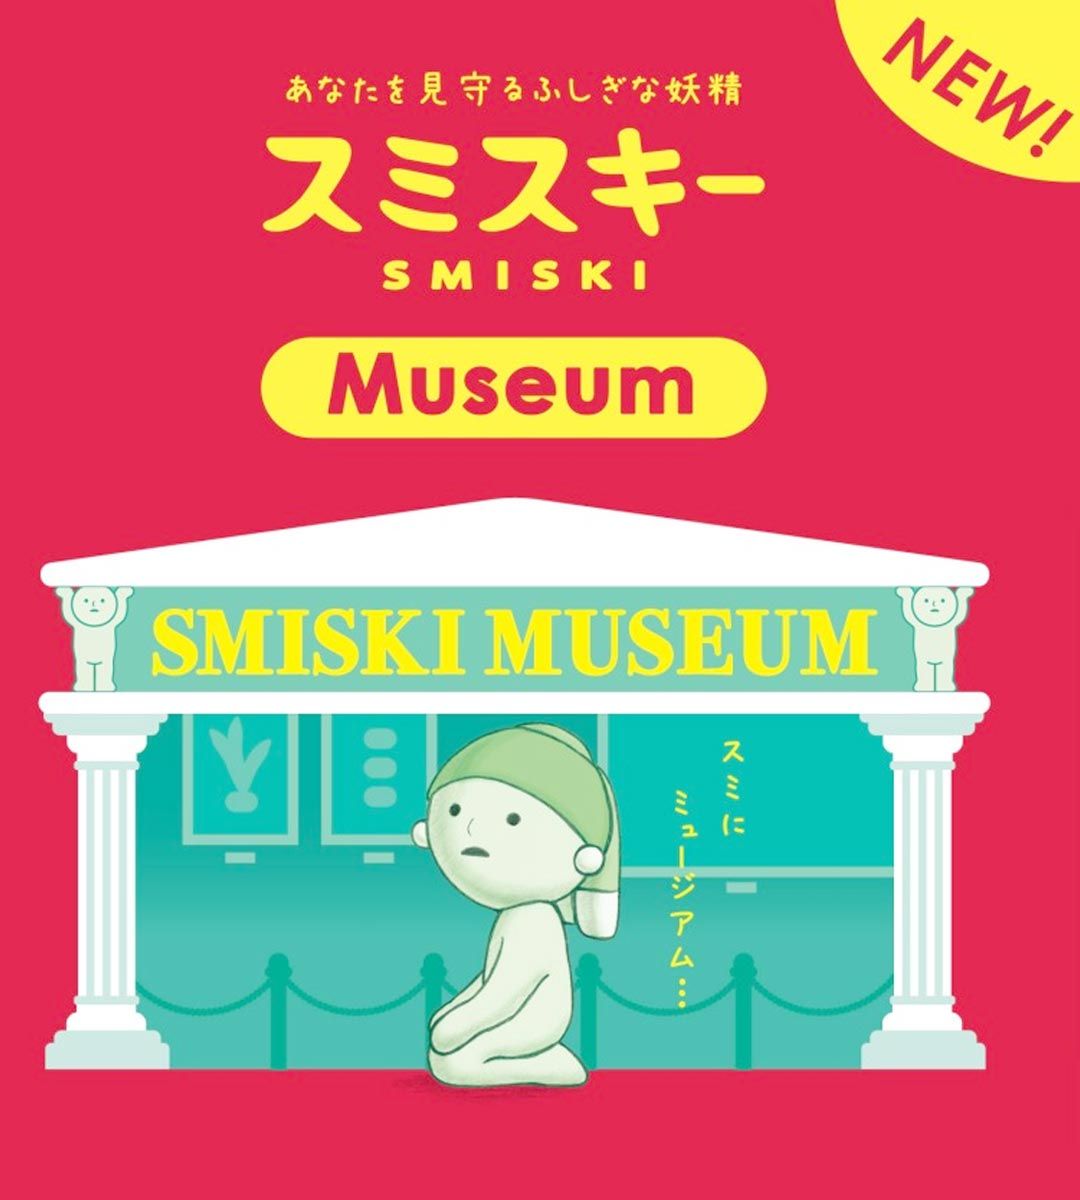 Smiski Museum